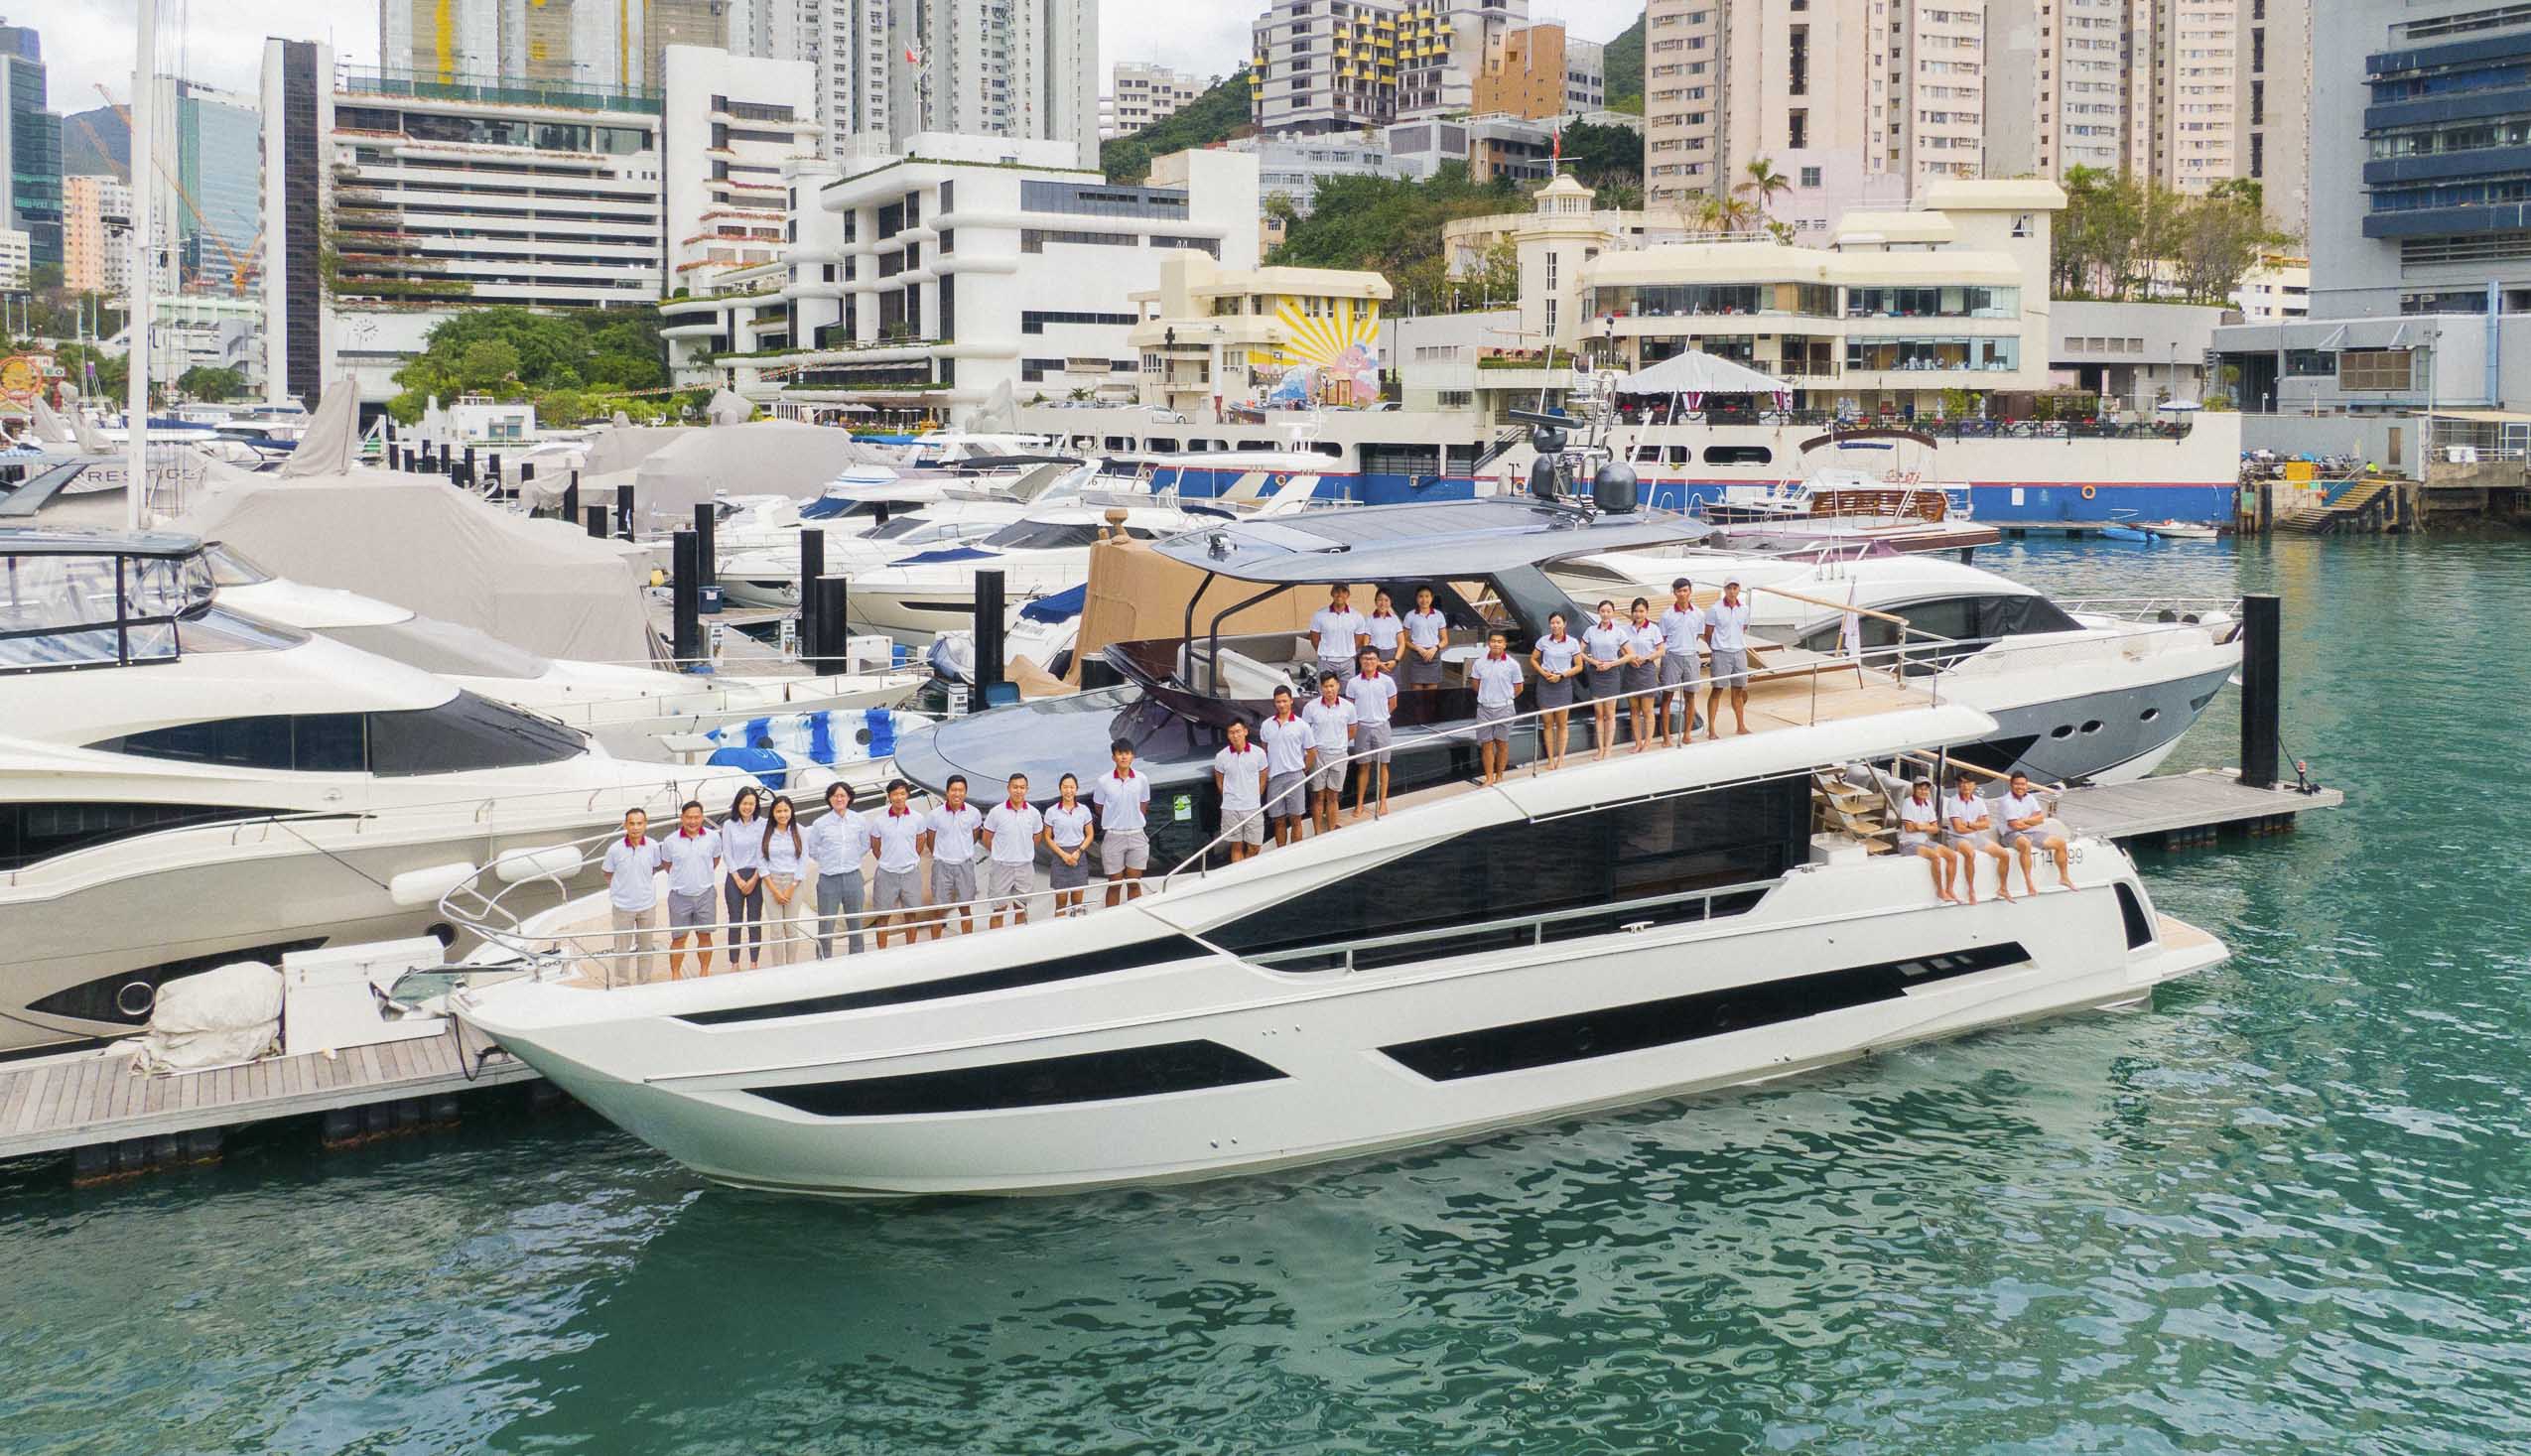 亞洲遊艇成立於 2007 年，作為一家奢華的私人遊艇經銷商，亞洲遊艇致力為顧客提供新遊艇銷售買賣、出售二手遊艇及遊艇售後服務，總部位於香港，業務及影響力遍及整個亞洲。